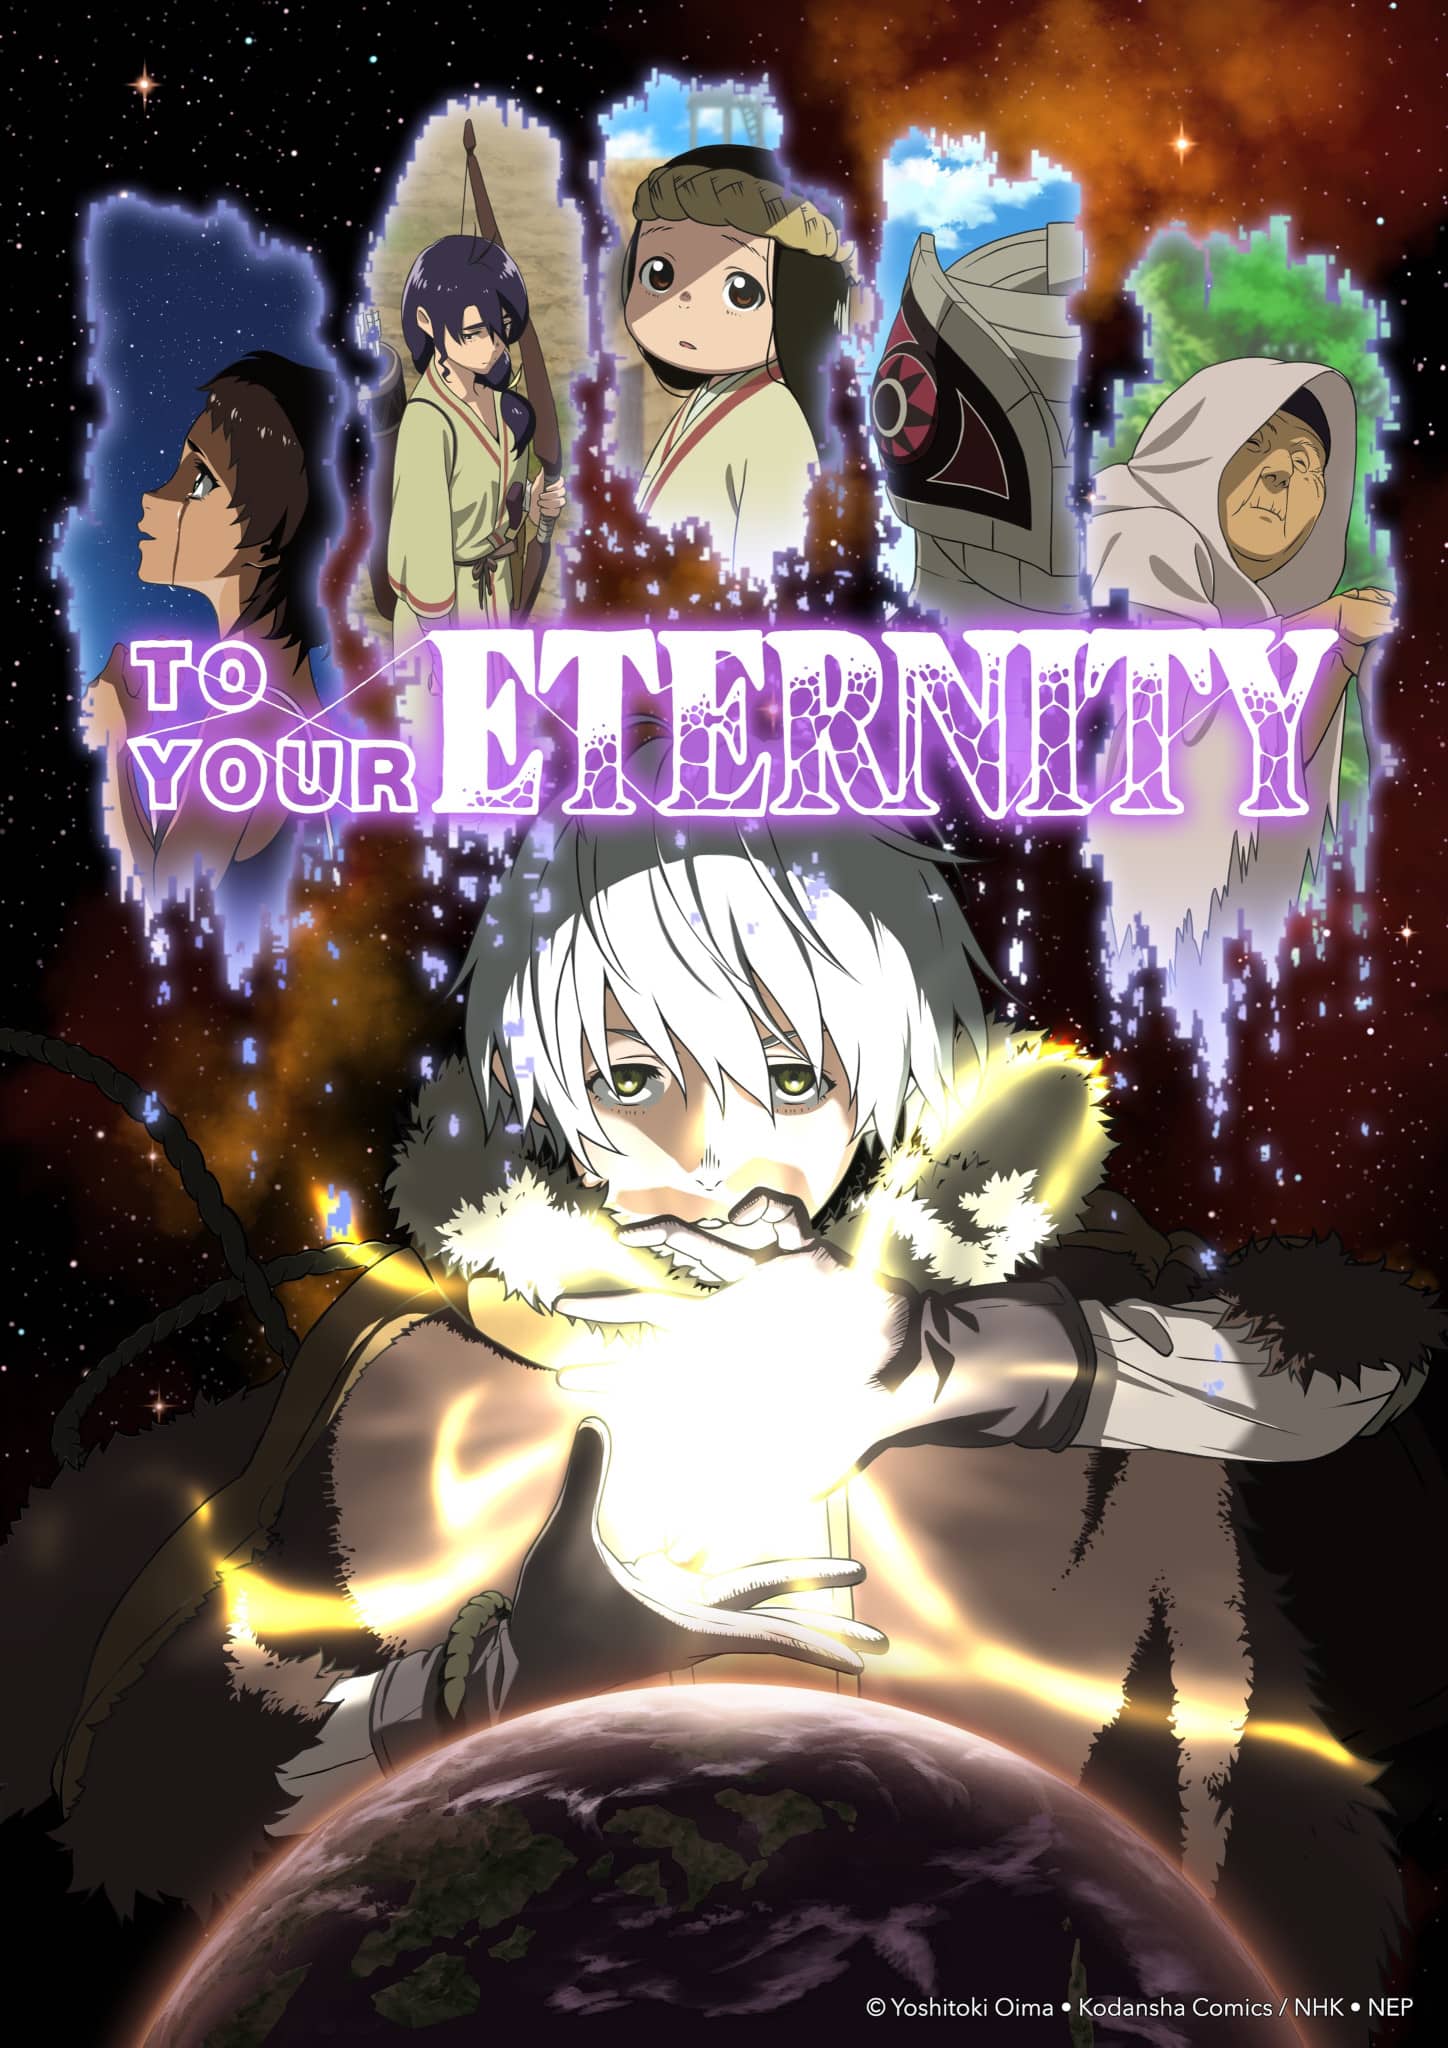 Annonce de la date de sortie de anime To Your Eternity